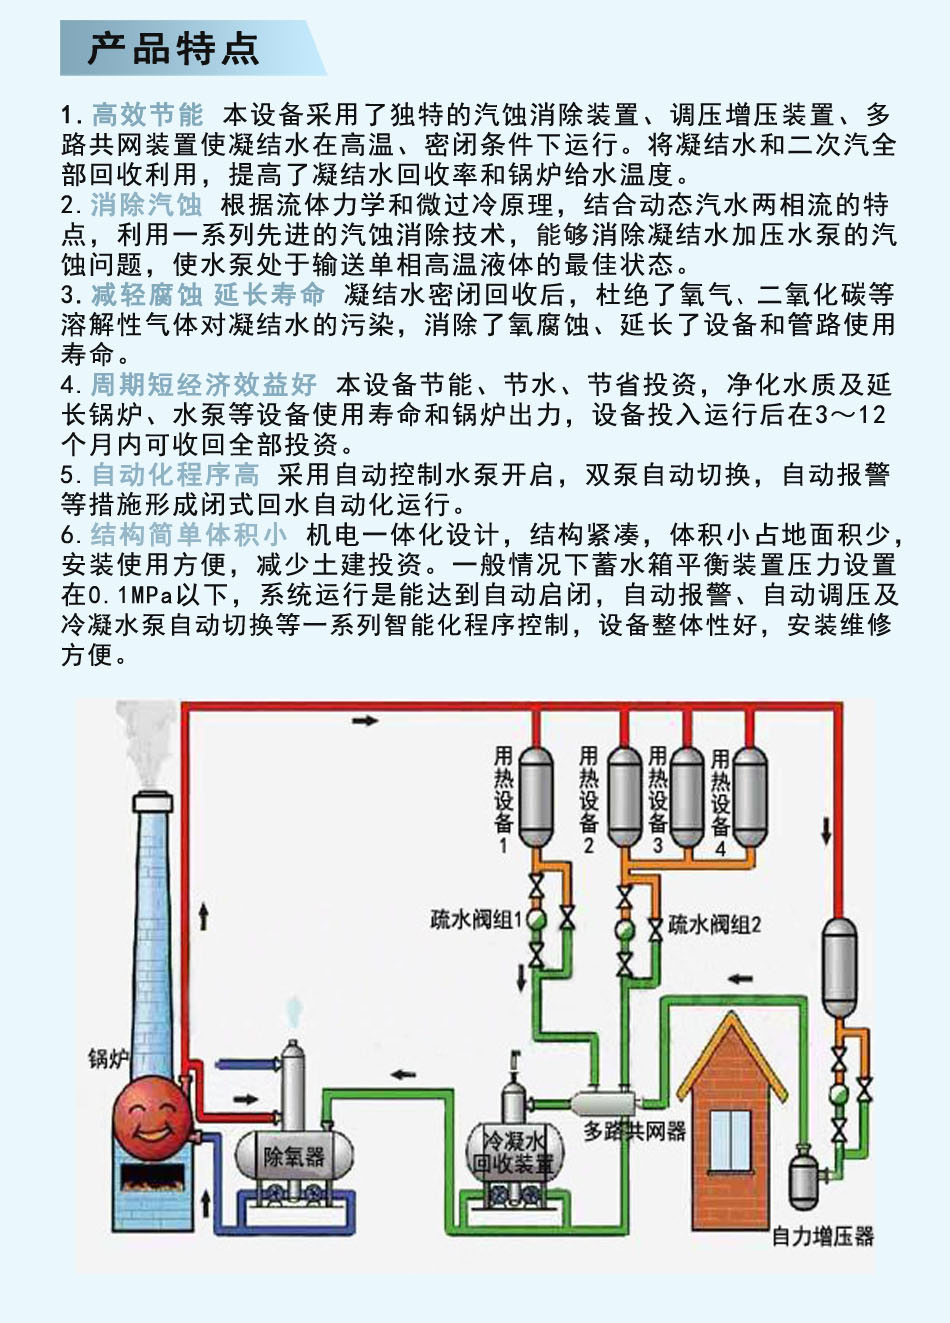 冷凝水回收机器冷凝水锅炉蒸汽水自动回收装置设备液位控制